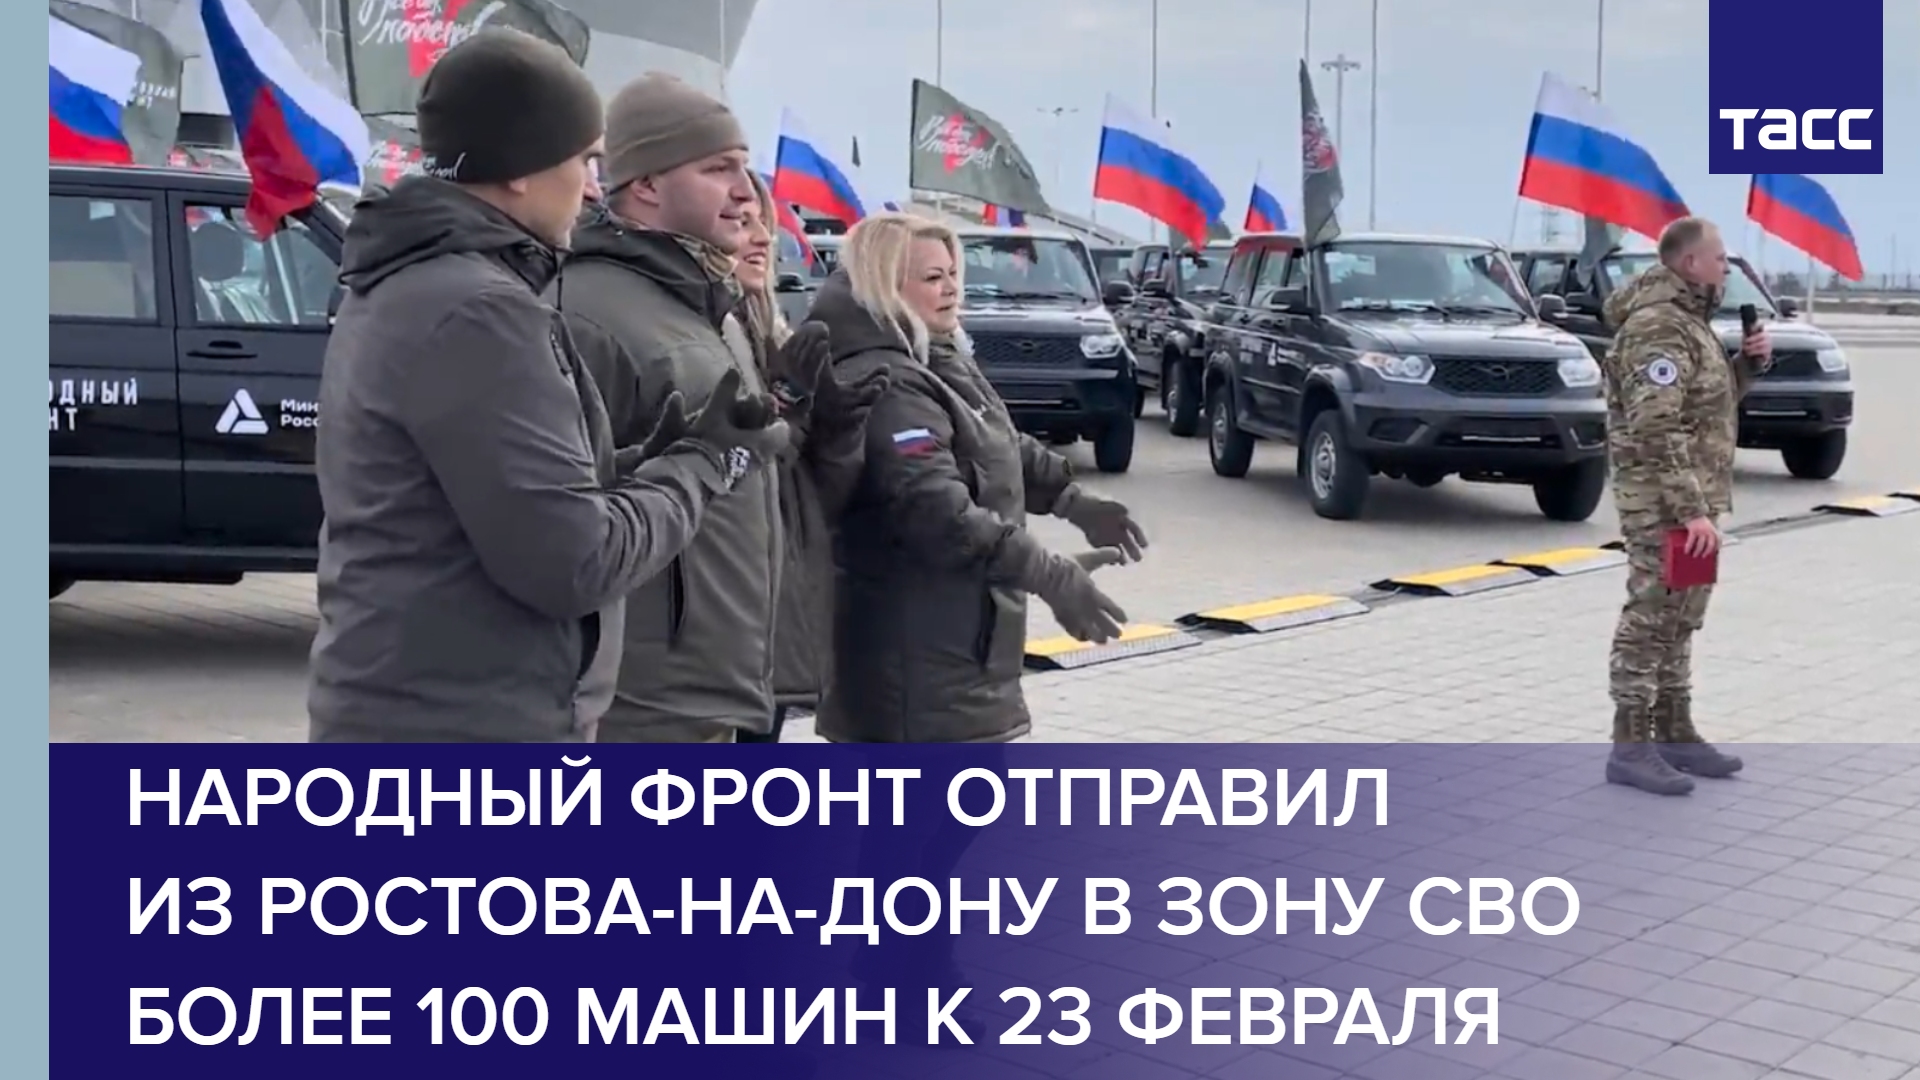 Народный фронт отправил из Ростова-на-Дону в зону СВО более 100 машин к 23 февраля